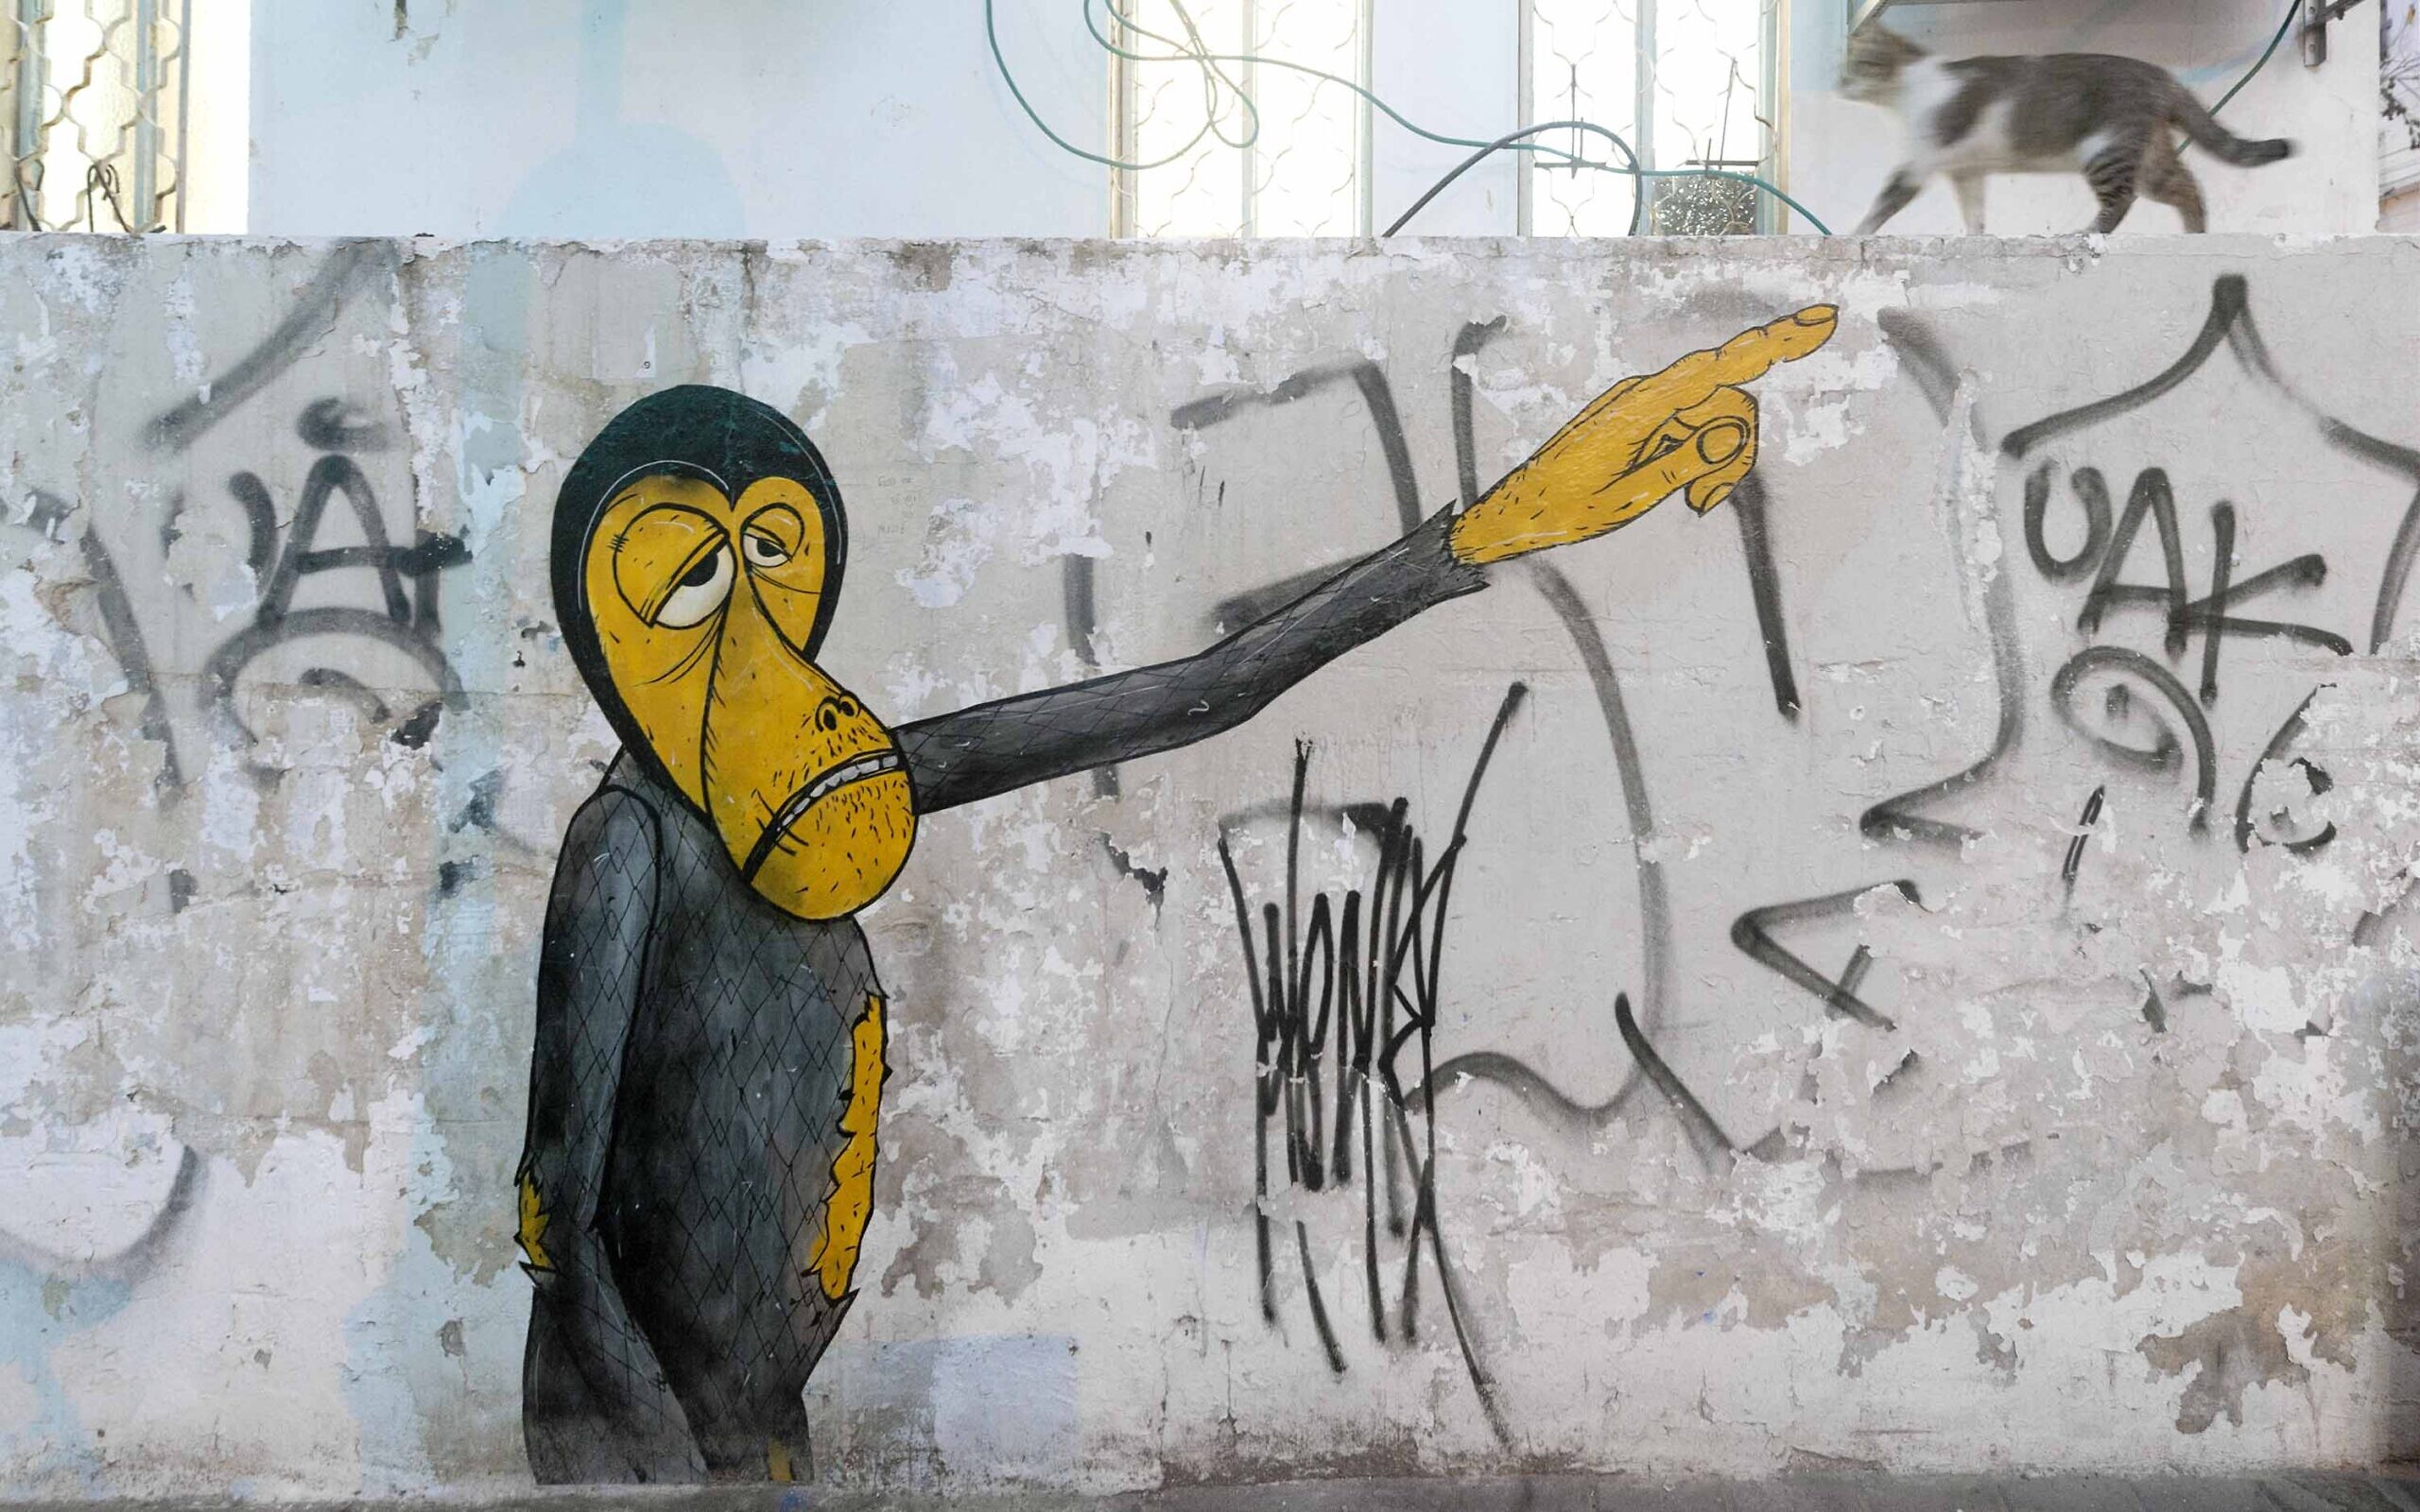 Street art in Tel Aviv. (Lord K2)